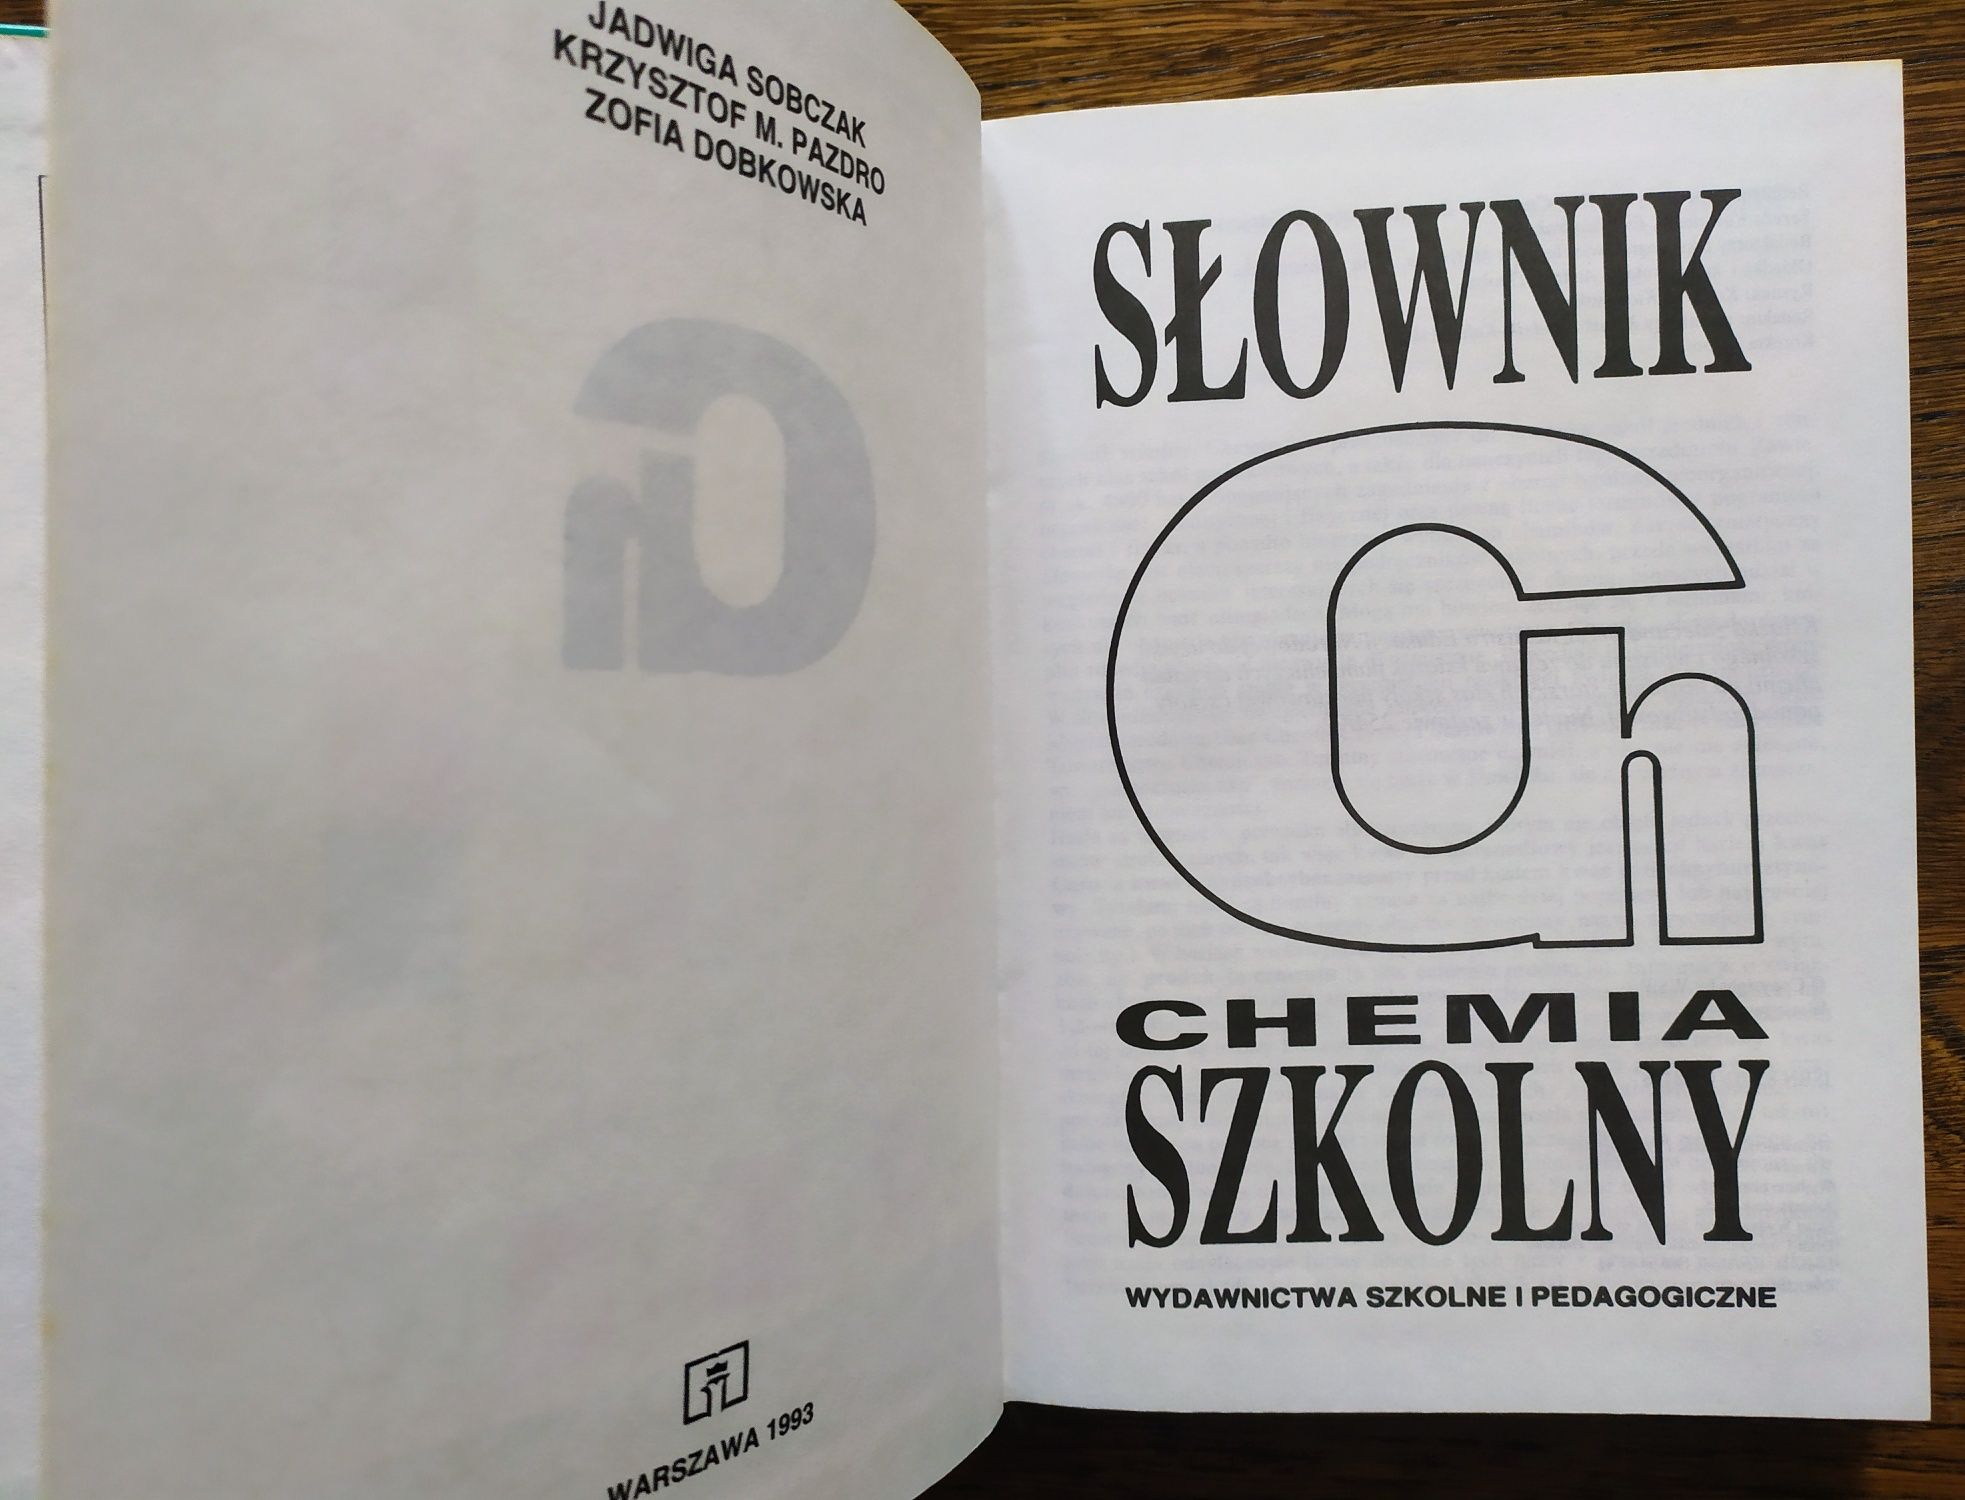 Słownik szkolny. Chemia - J. Sobczak, K. M. Pazdro, Z. Dobkowska